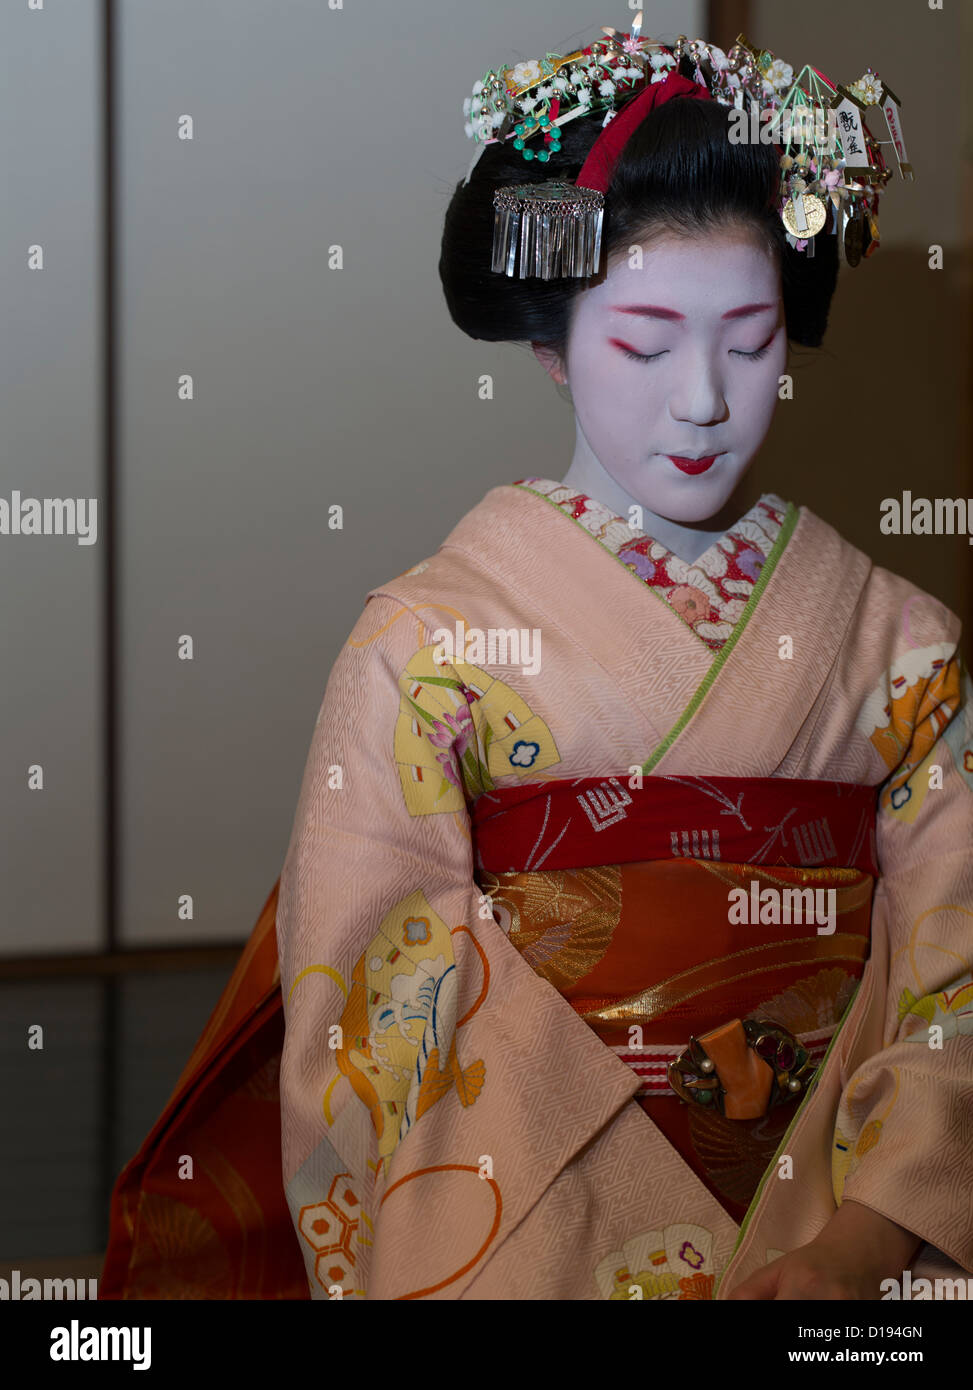 Eriha à 17 ans ( stagiaire ) geisha maiko recevez des invités dans une maison de thé de Gion à Kyoto, Japon Banque D'Images